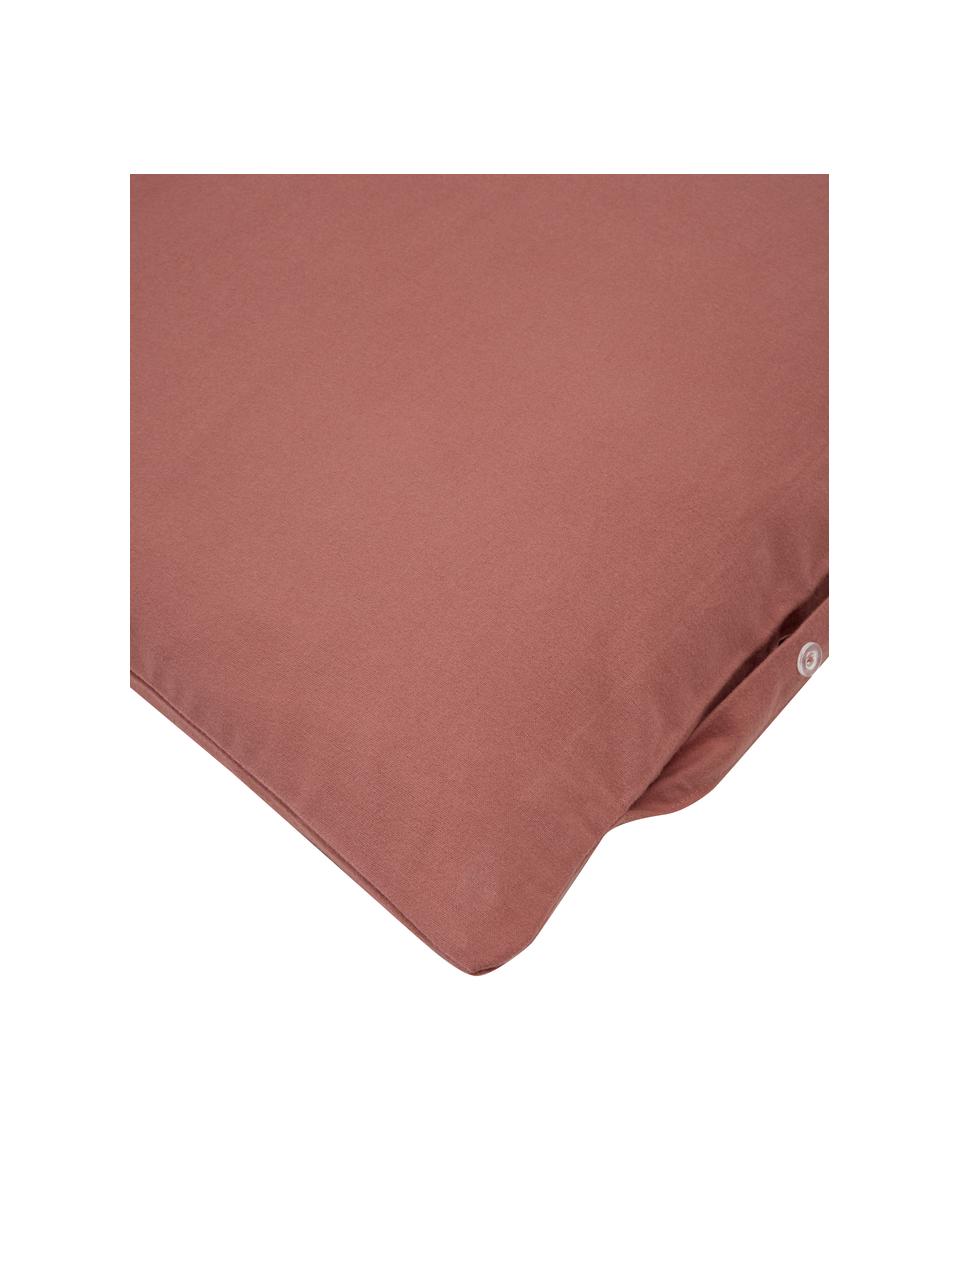 Poszewka na poduszkę z flaneli Erica, 2 szt., Blady różowy, S 40 x D 80 cm